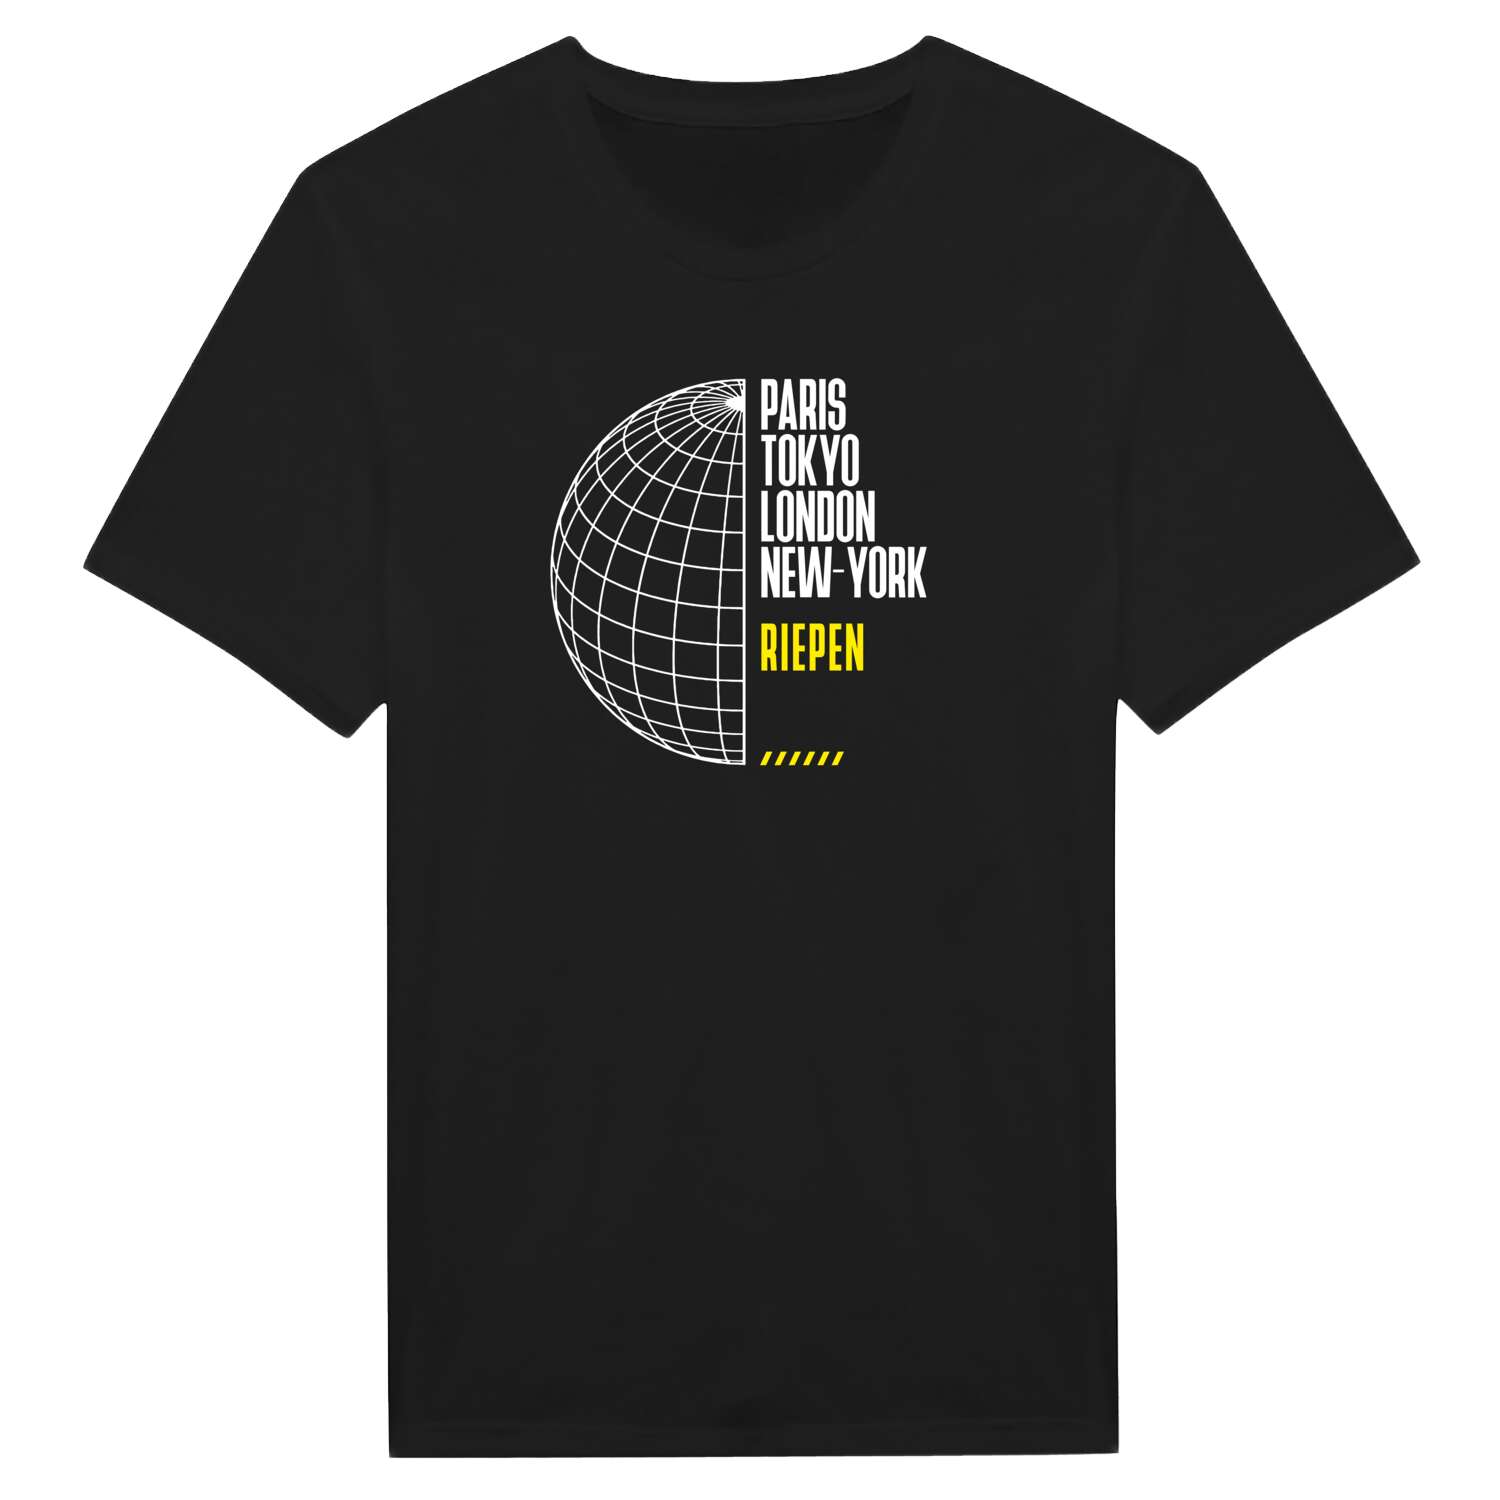 Riepen T-Shirt »Paris Tokyo London«